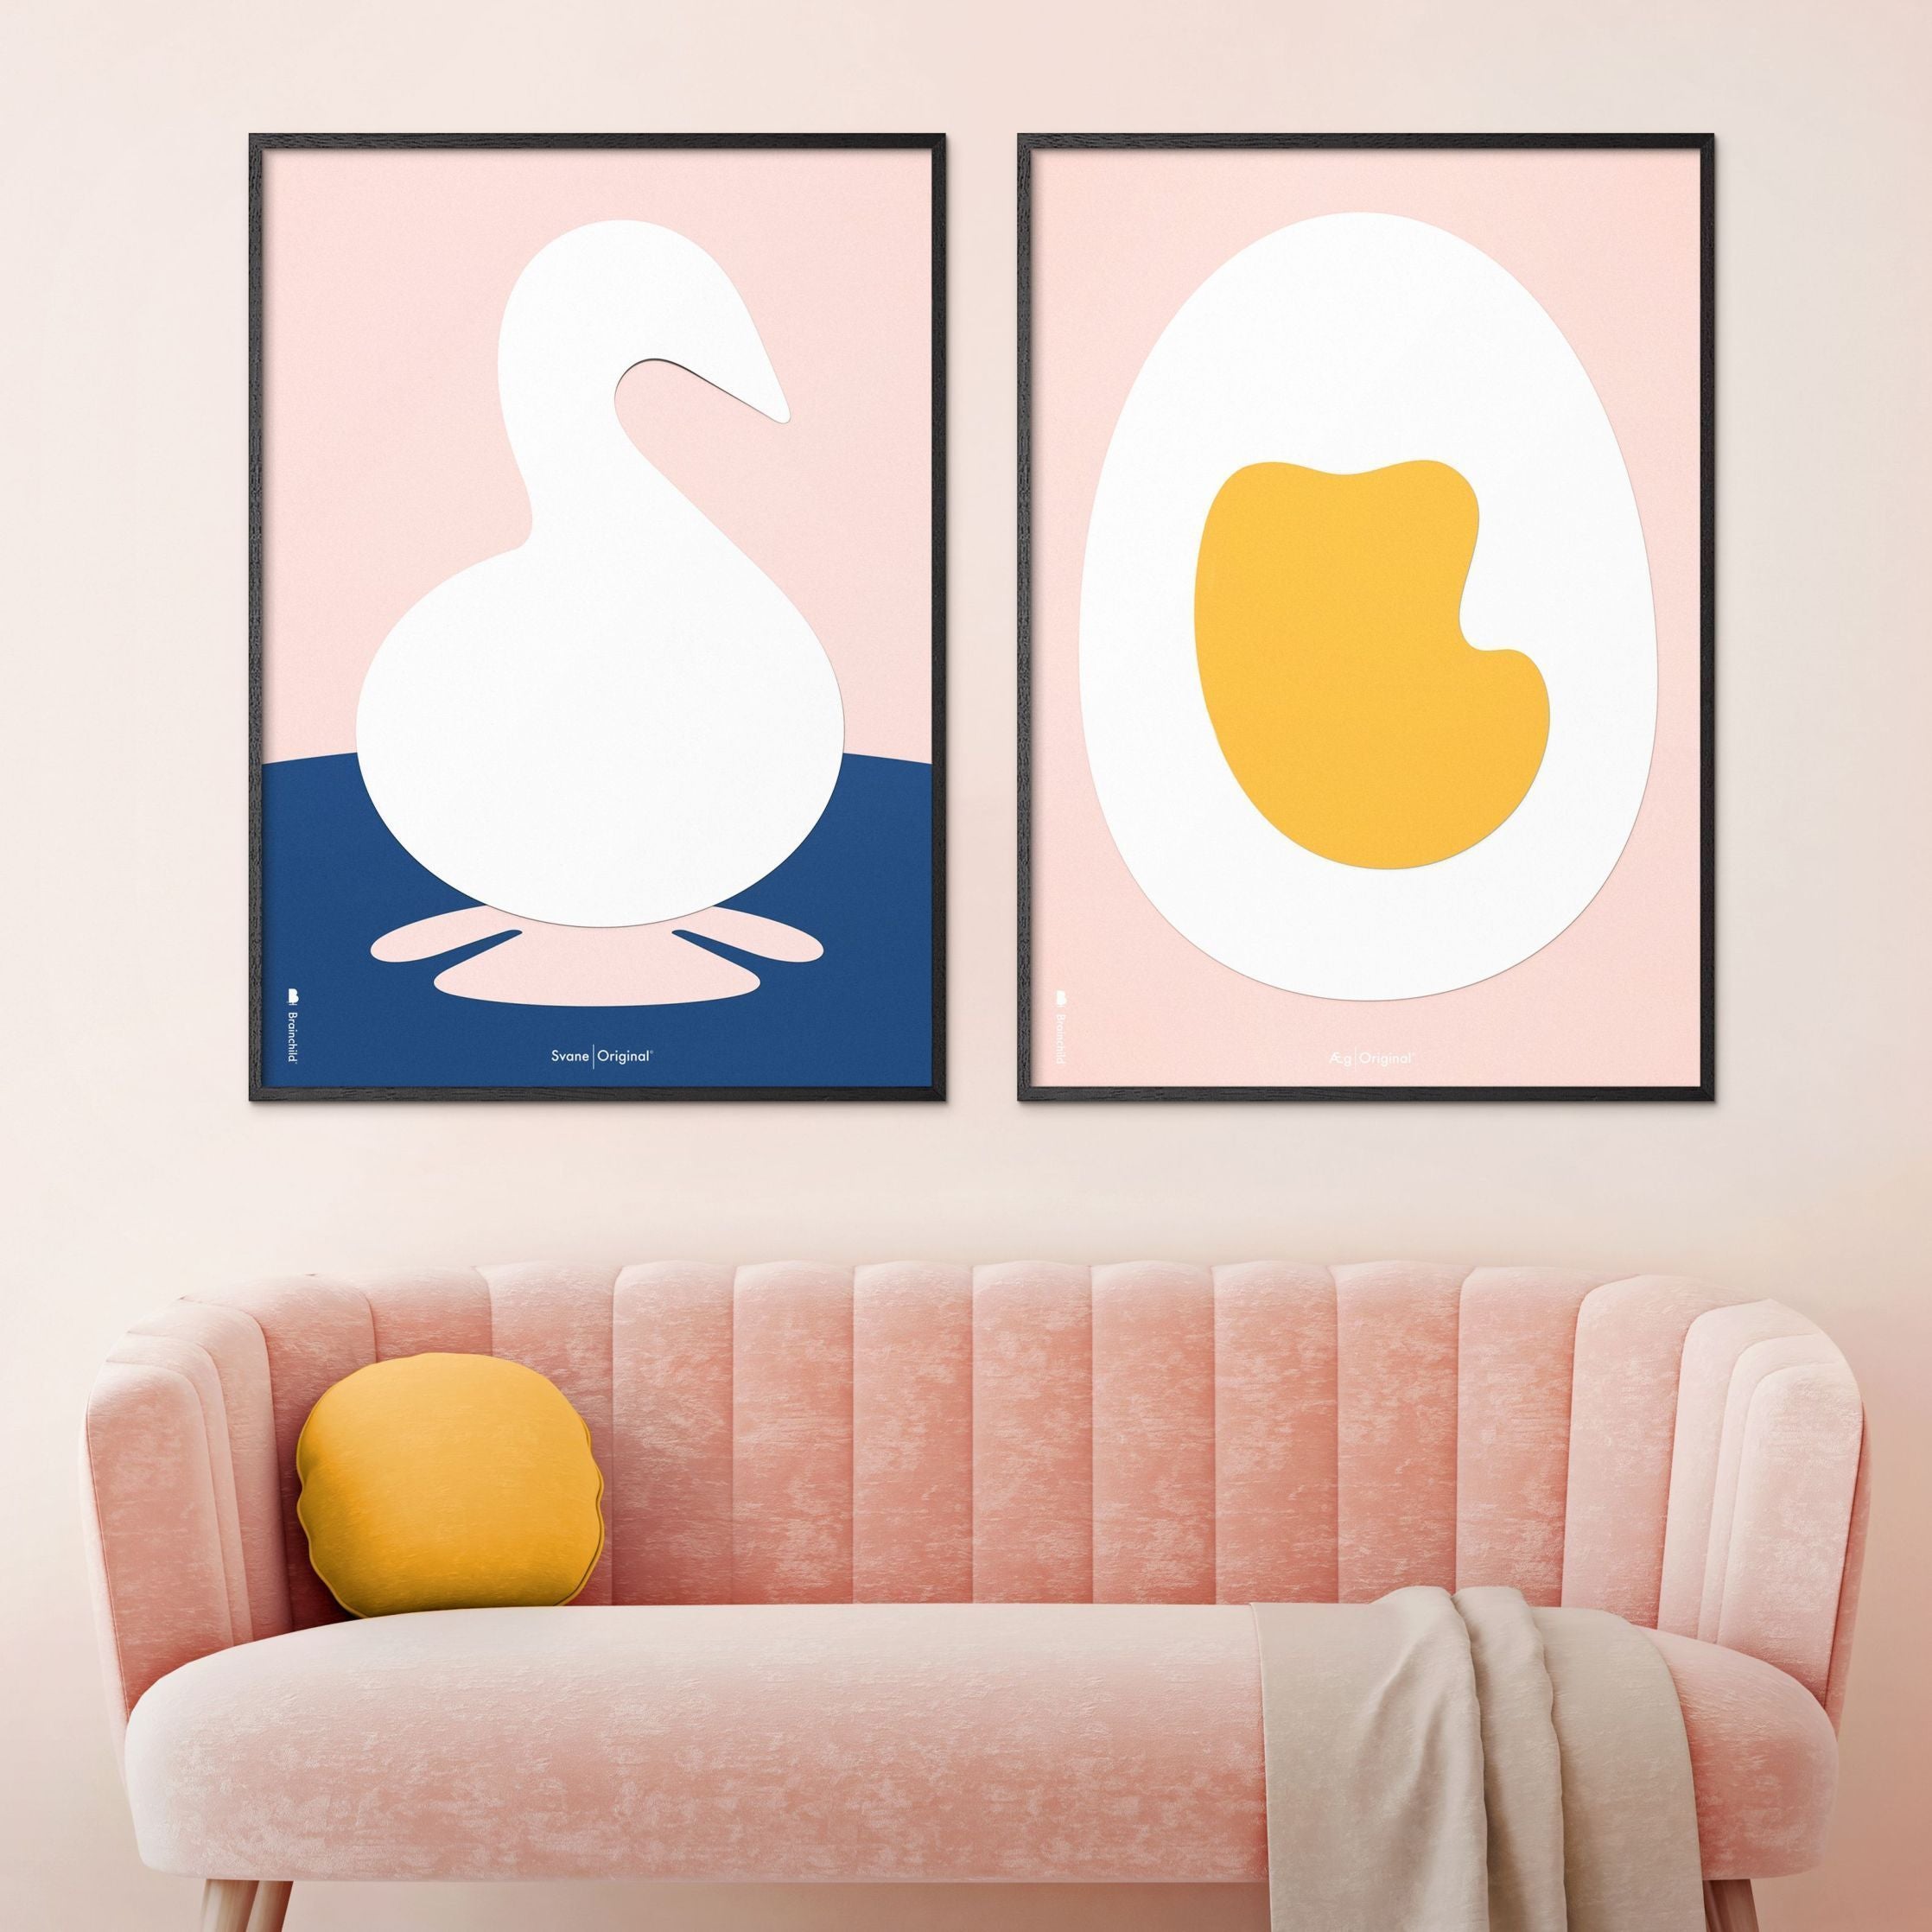 Brainchild Egg Paper Clip Poster, Frame Made of Light Wood 30x40 cm, rosa bakgrunn